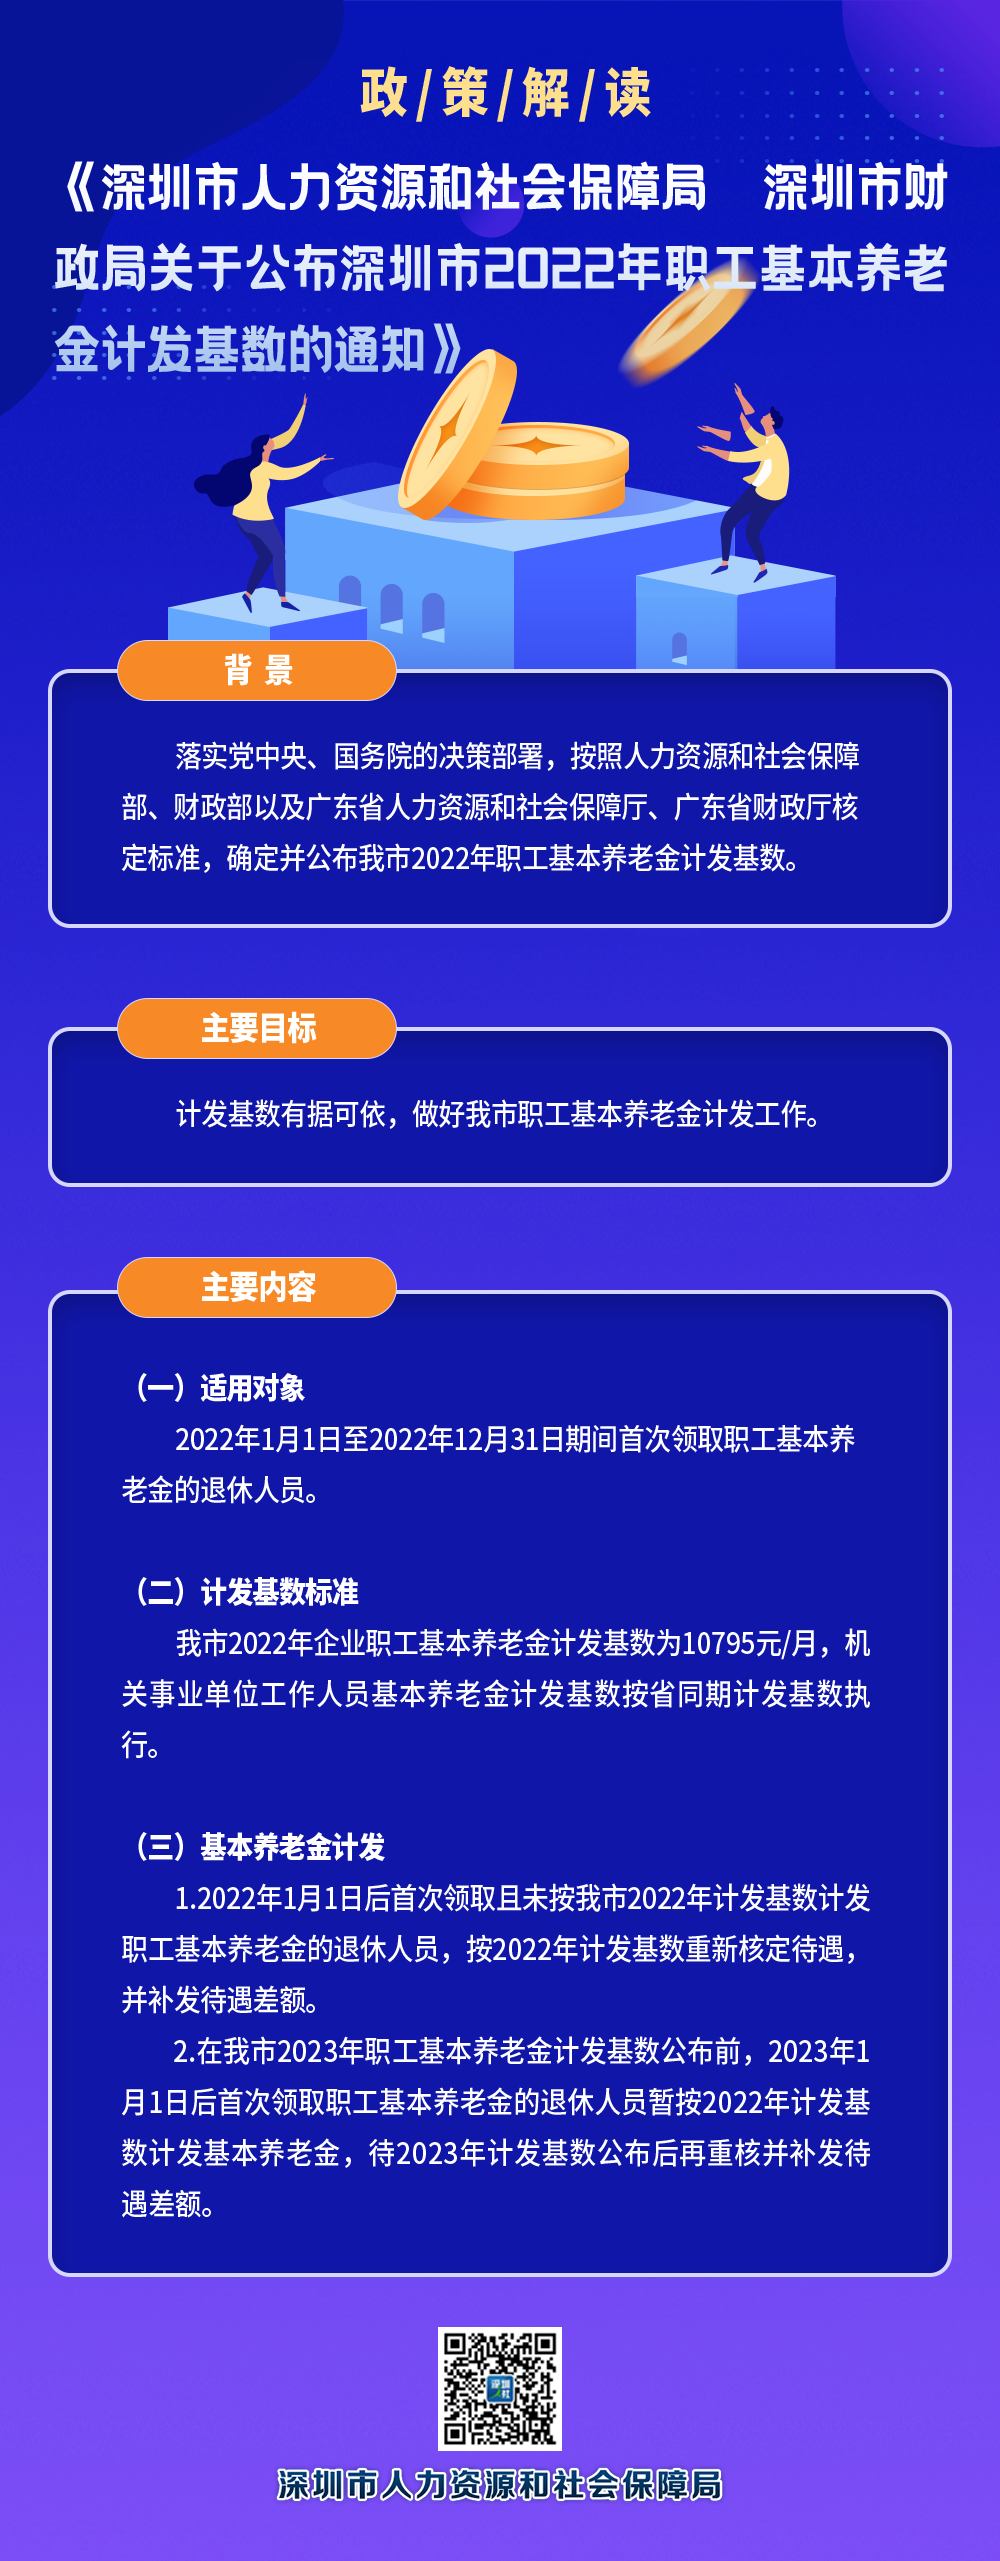 公布深圳市2022年职工基本养老金计发基数的通知-13.png